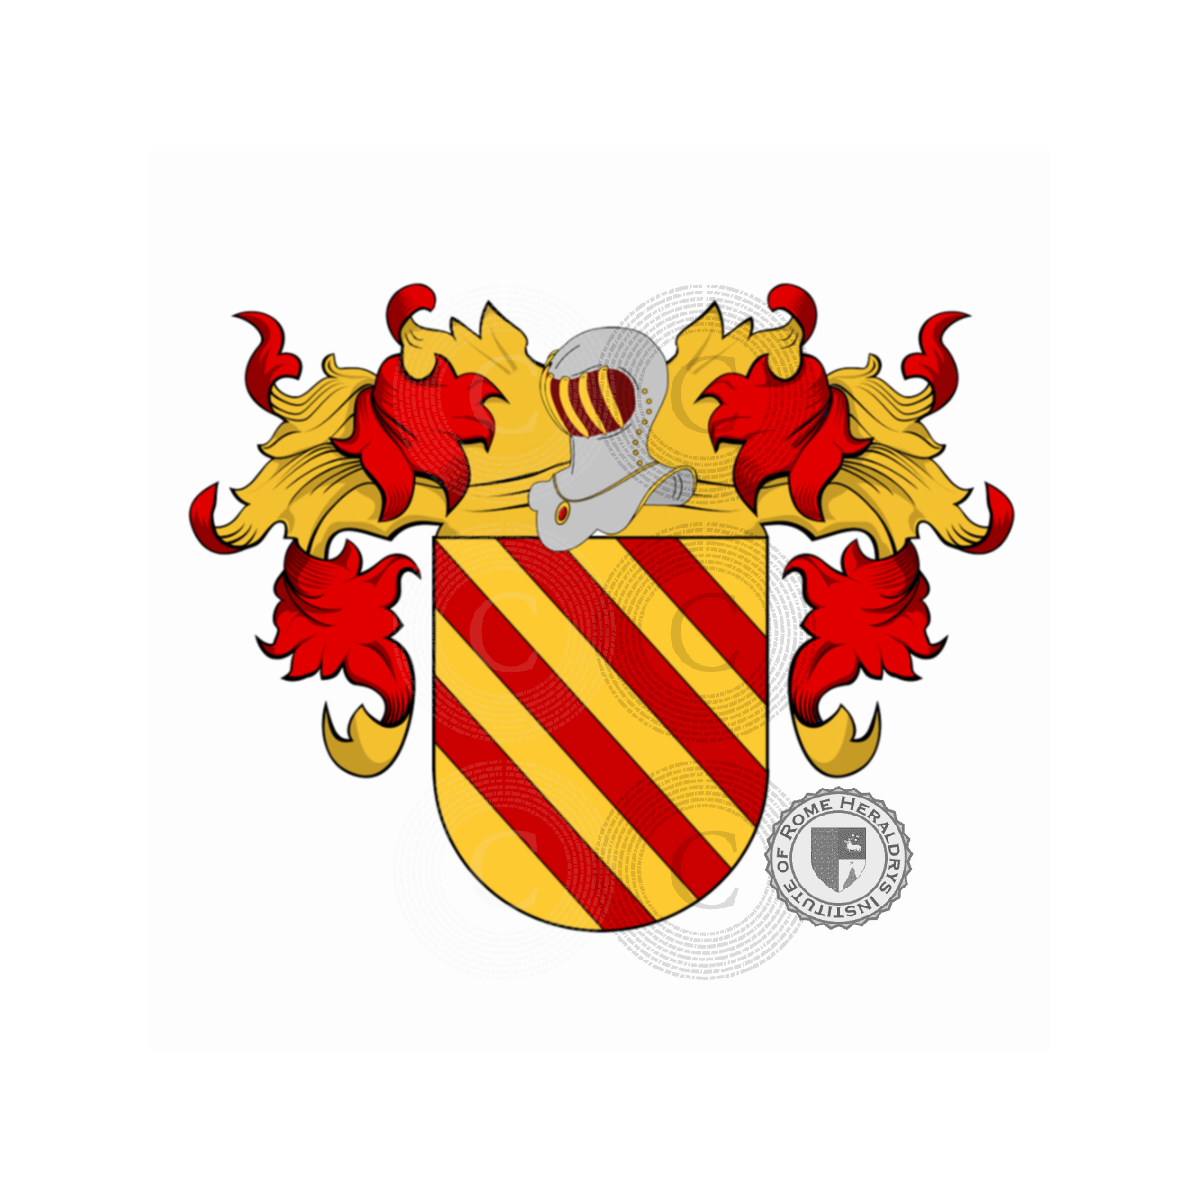 Wappen der FamilieNúñez